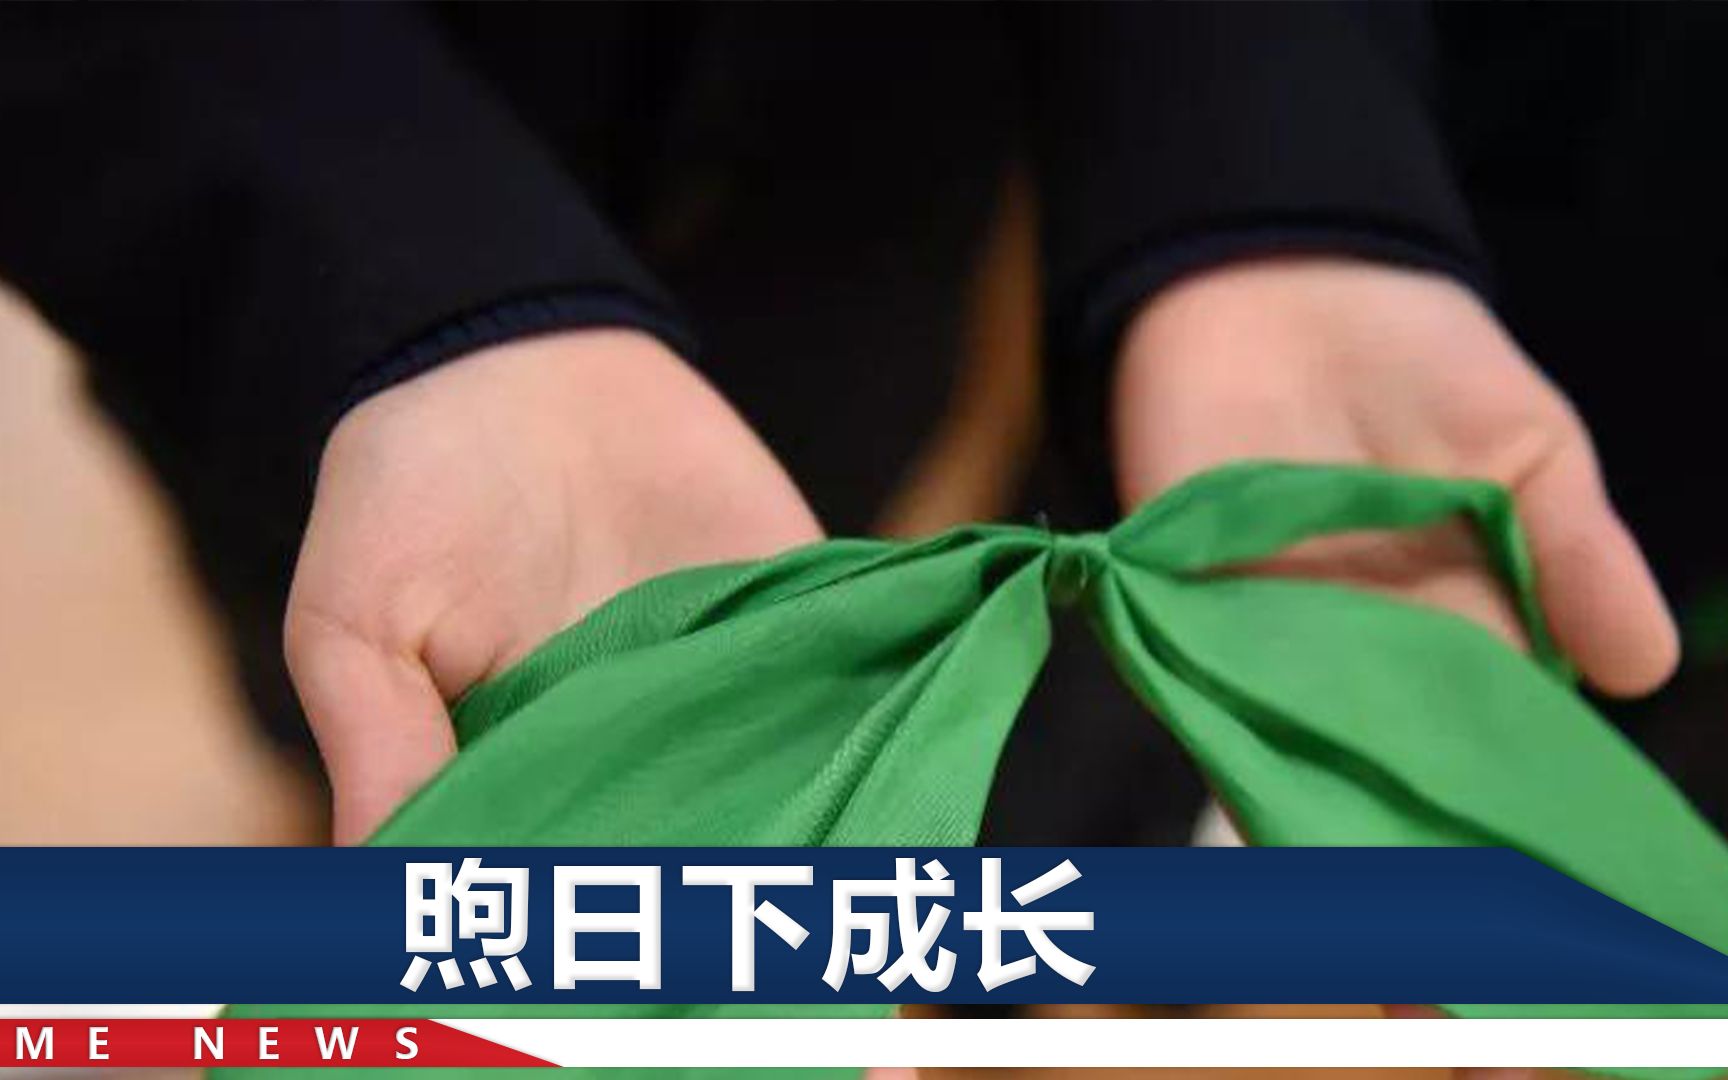 浙江一小学给孩子戴绿领巾，80后90后齐齐迷惑：这是啥意思？